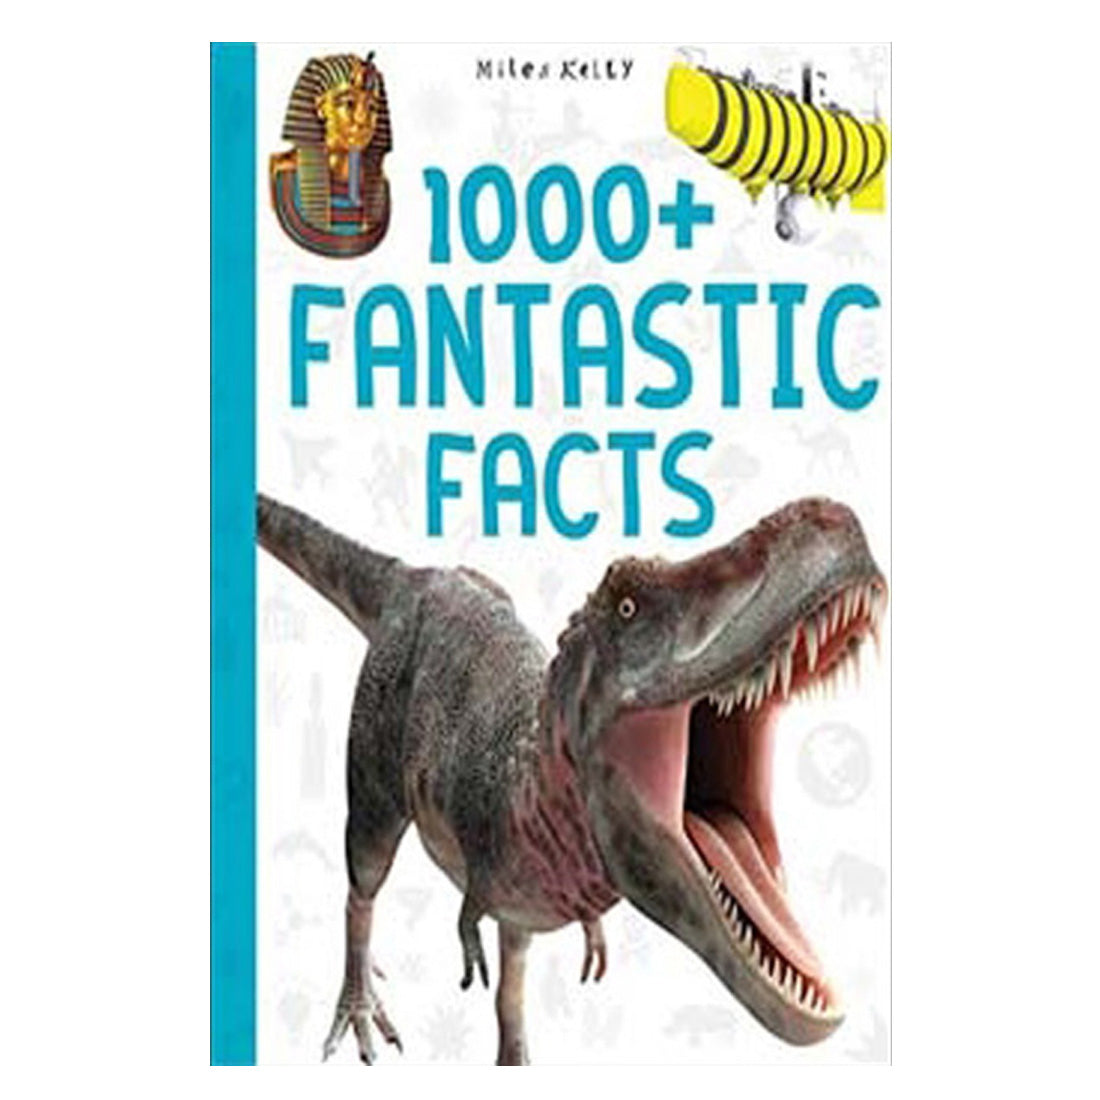 Fantastic Facts 1000+